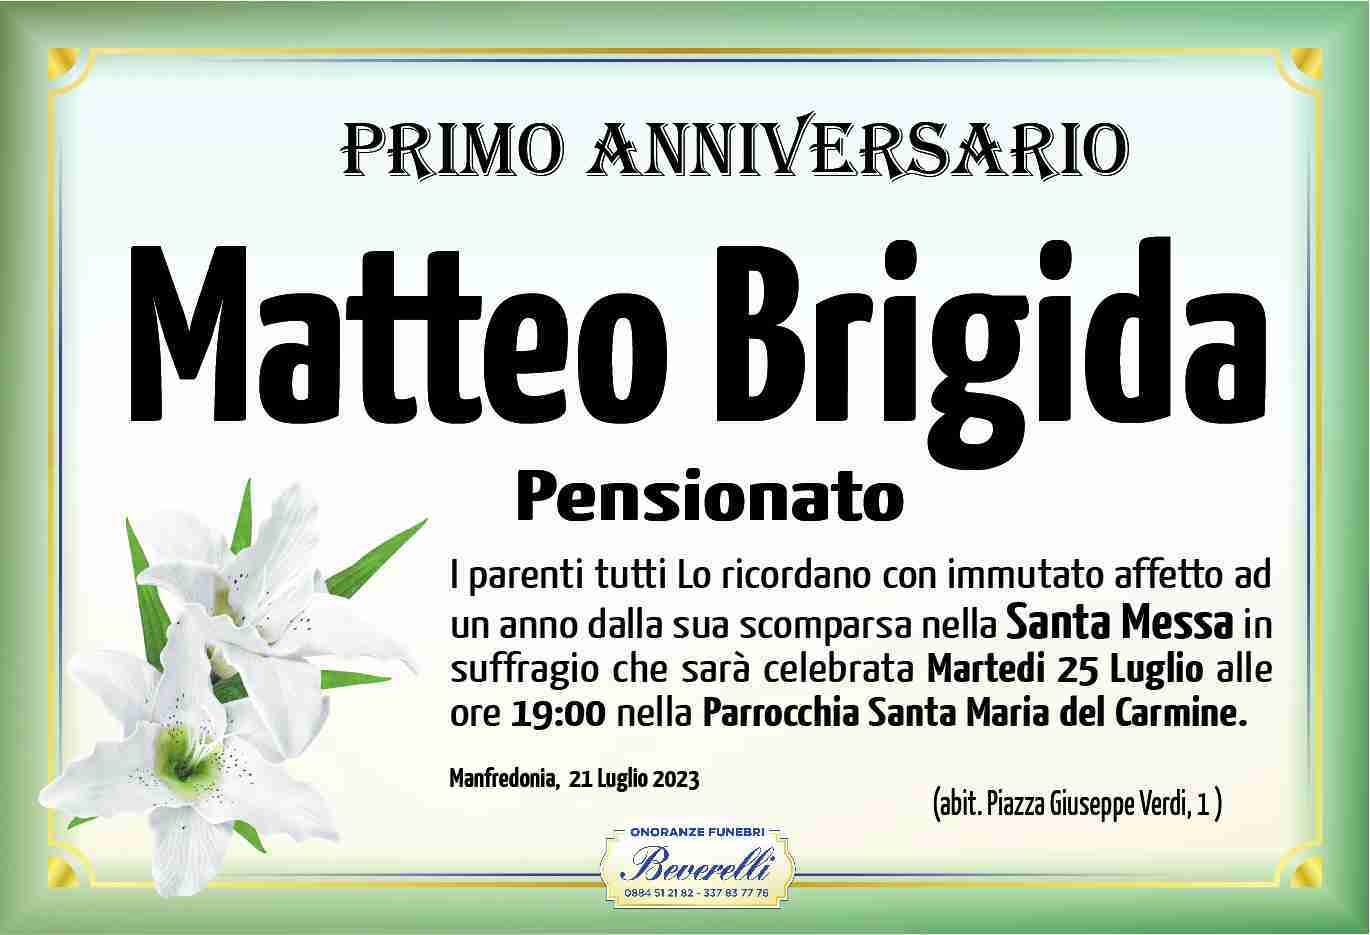 Matteo Brigida